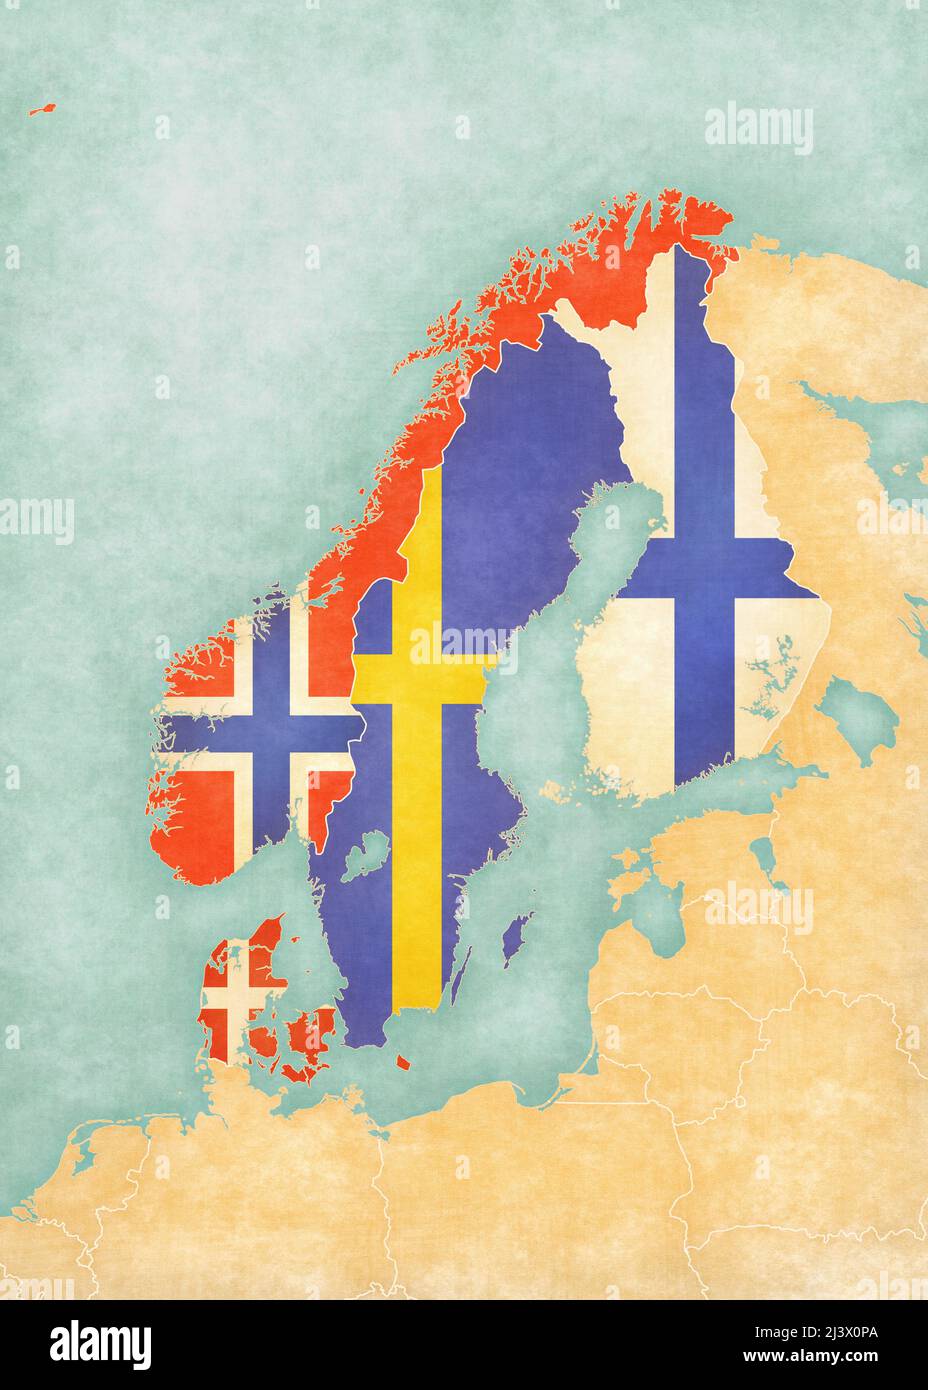 Bandiere di tutti i paesi sulla mappa della Scandinavia in morbido grunge e vintage stile, come la pittura acquerello su carta vecchia. Foto Stock